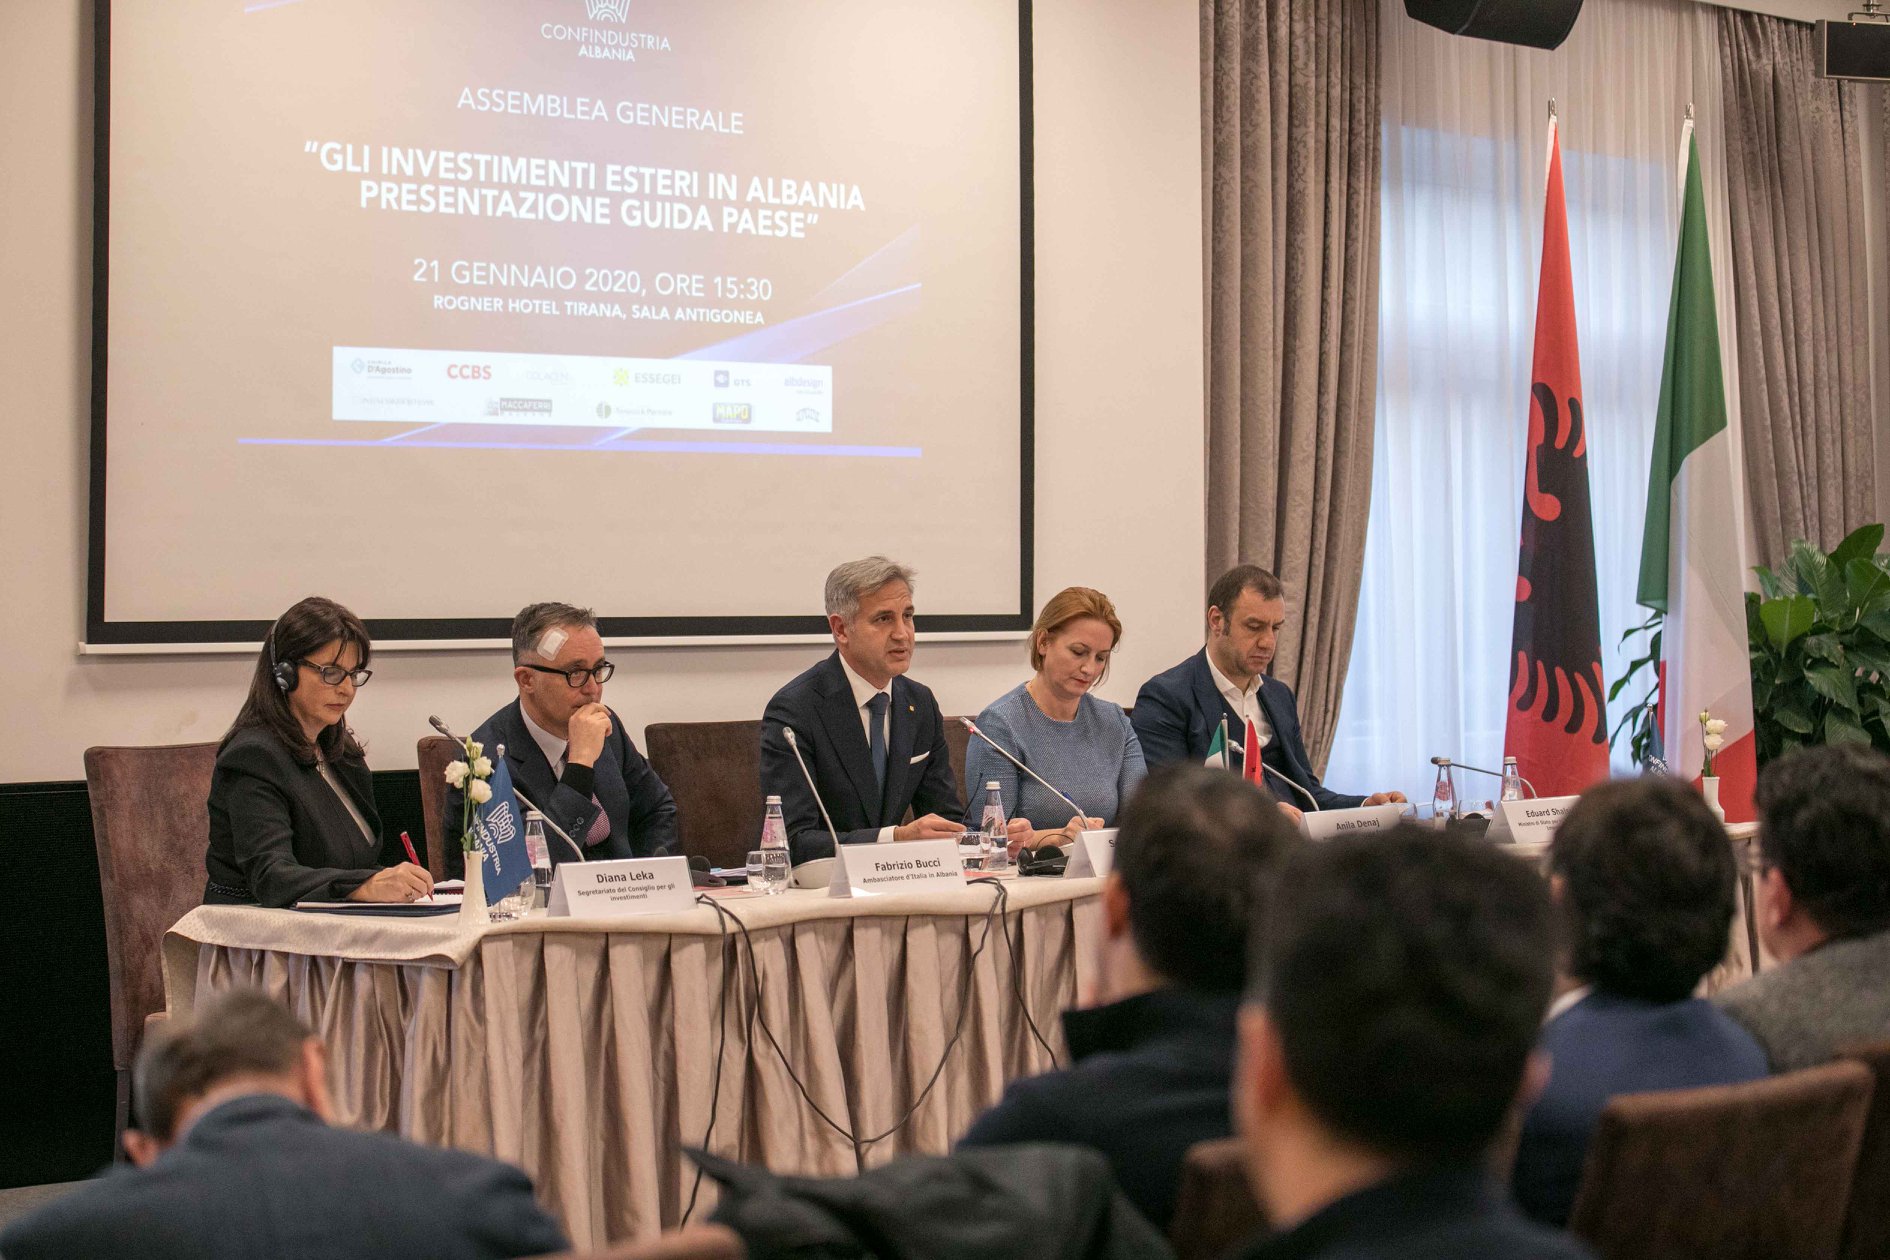 Assemblea Generale Confindustria Albania, “Gli investimenti esteri in Albania. Presentazione Guida Paese”, 21 gennaio 2020.